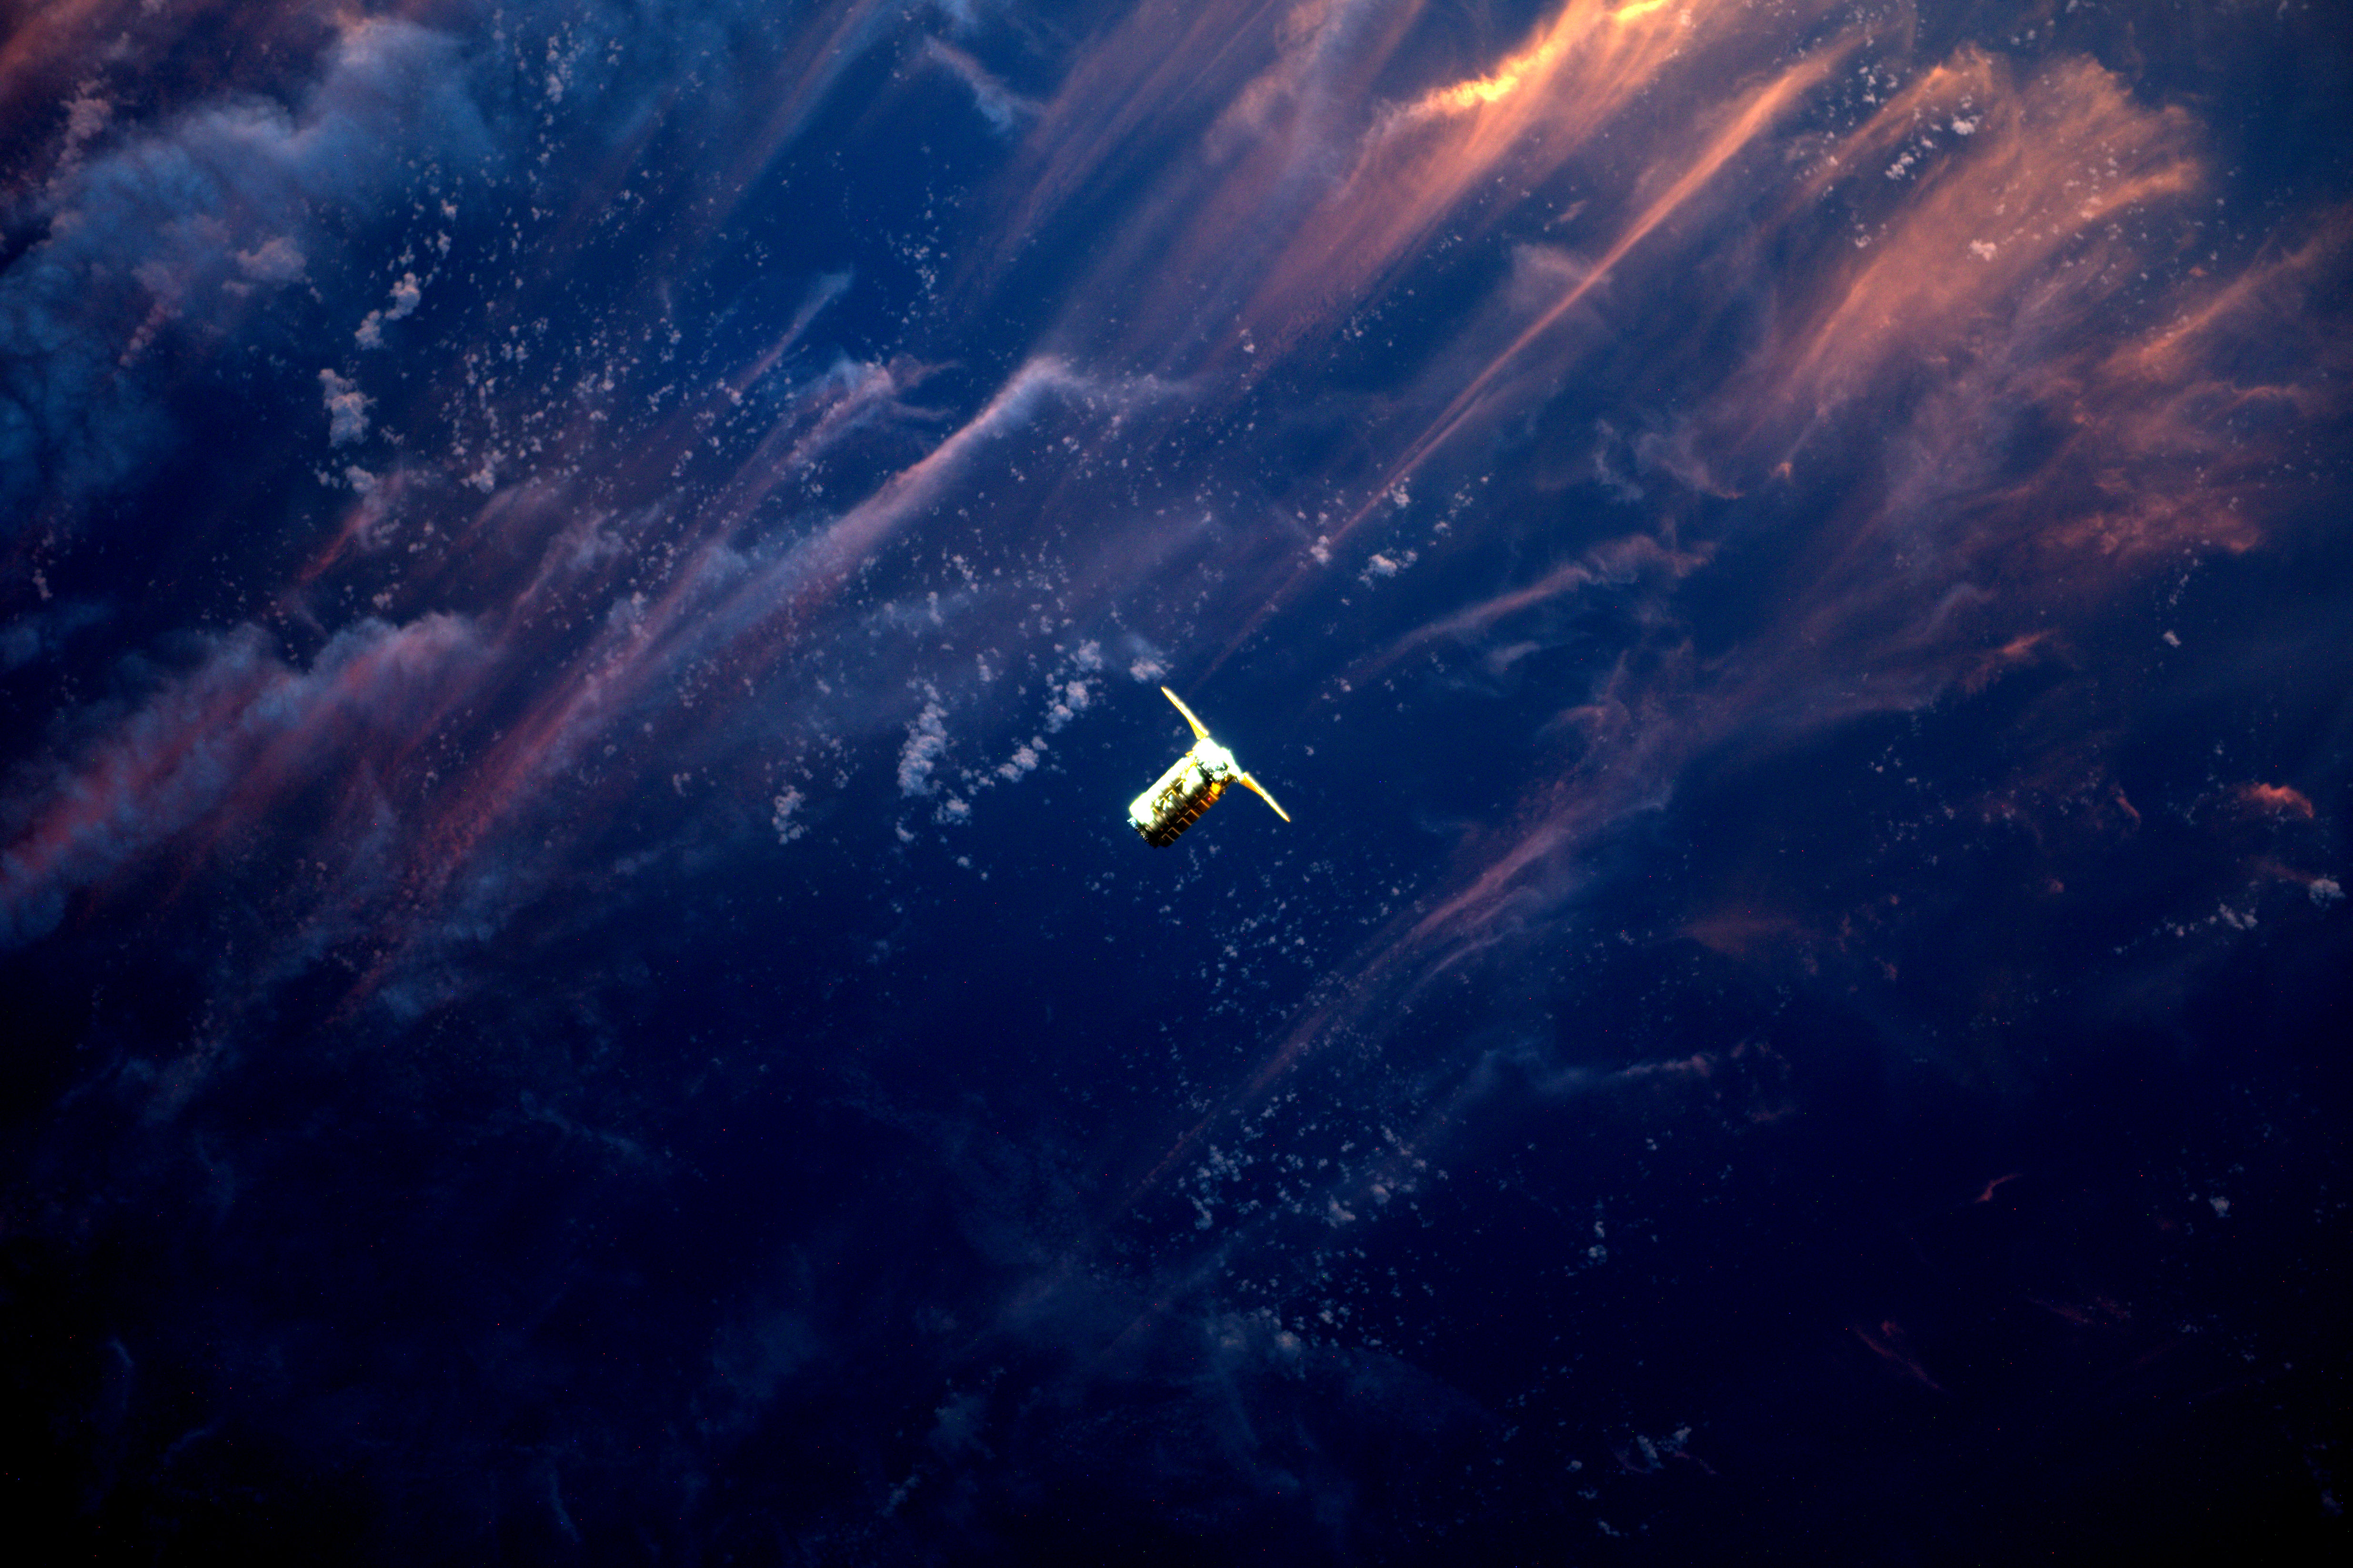 НАСА опубликовало очень красивый снимок приближения космического корабля Cygnus к МКС